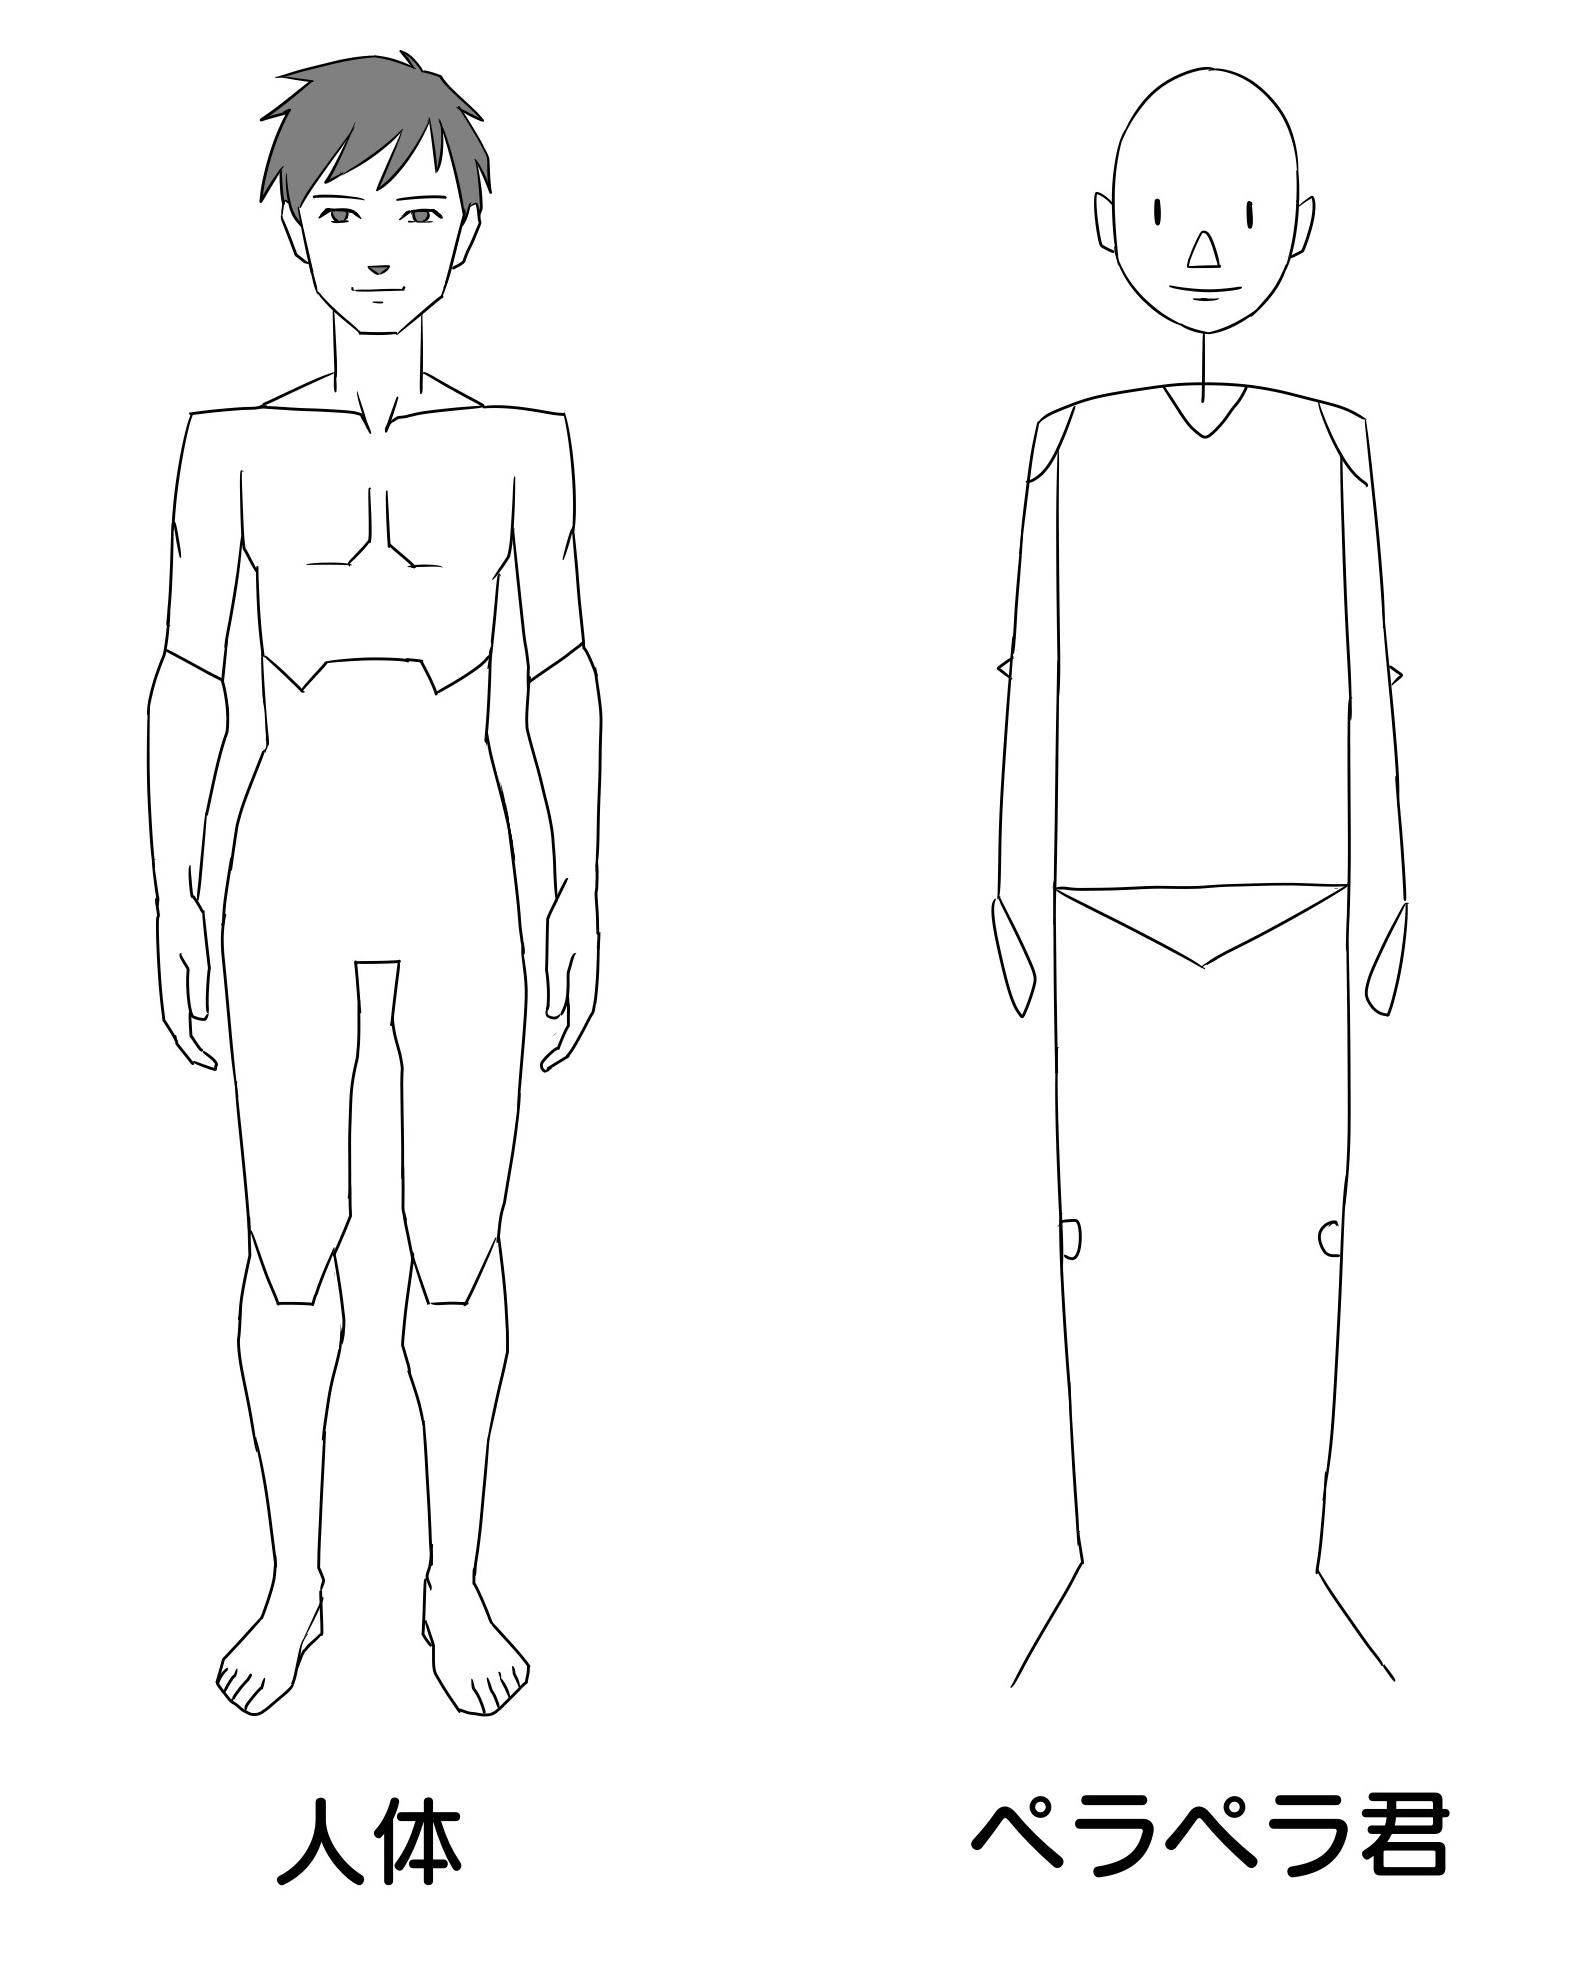 新手画人体怎么学?教你简易人体轮廓的绘制步骤!